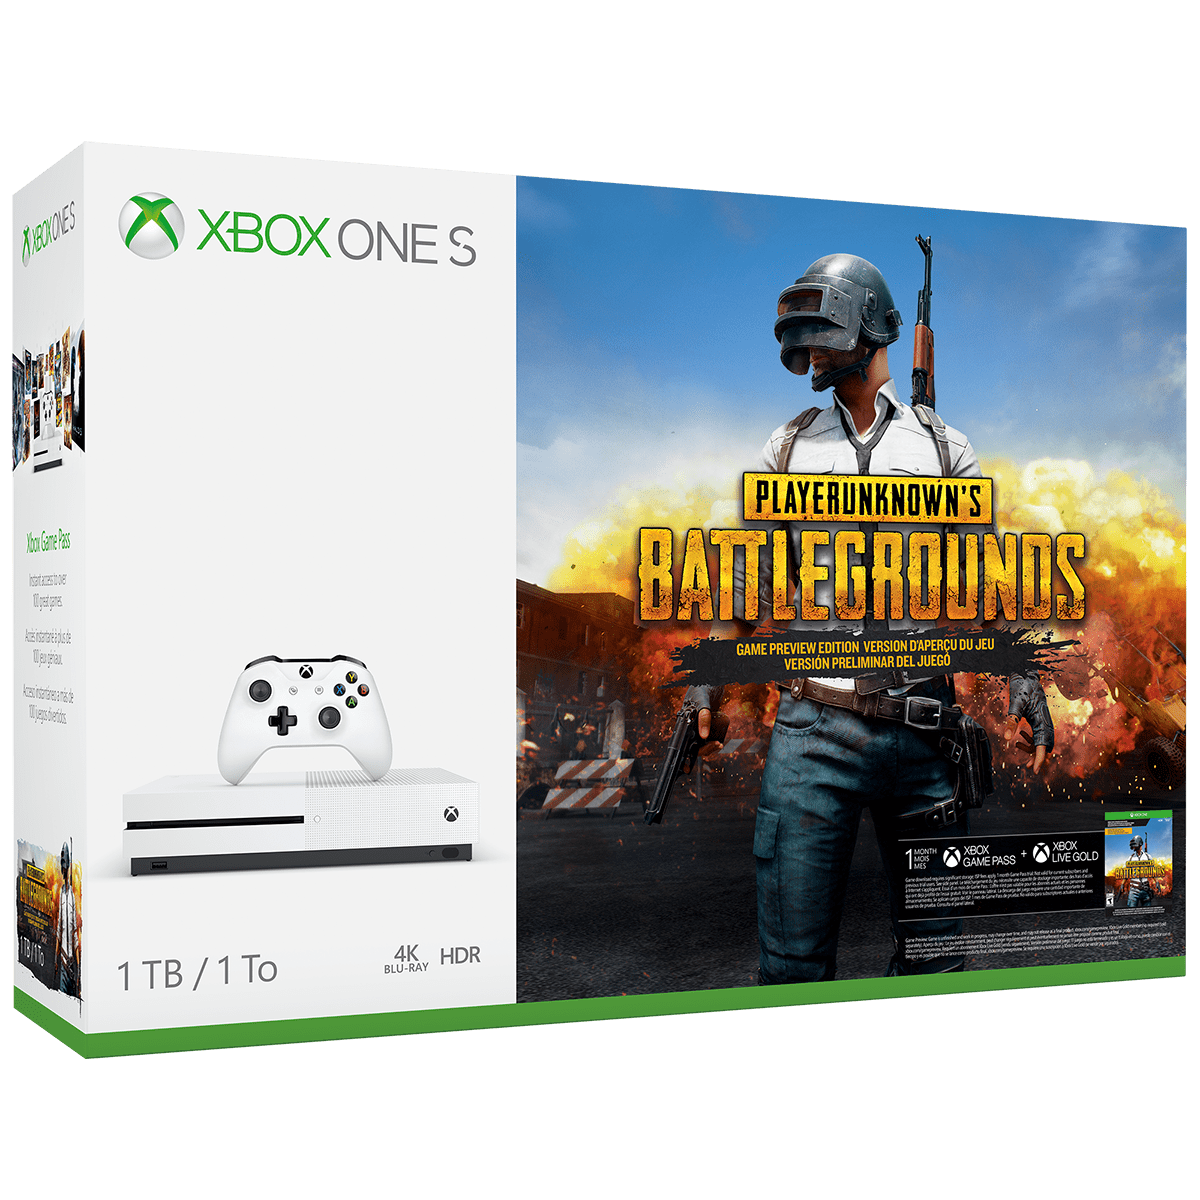 Xbox Game Pass Core: conheça o novo serviço da Microsoft - Adrenaline